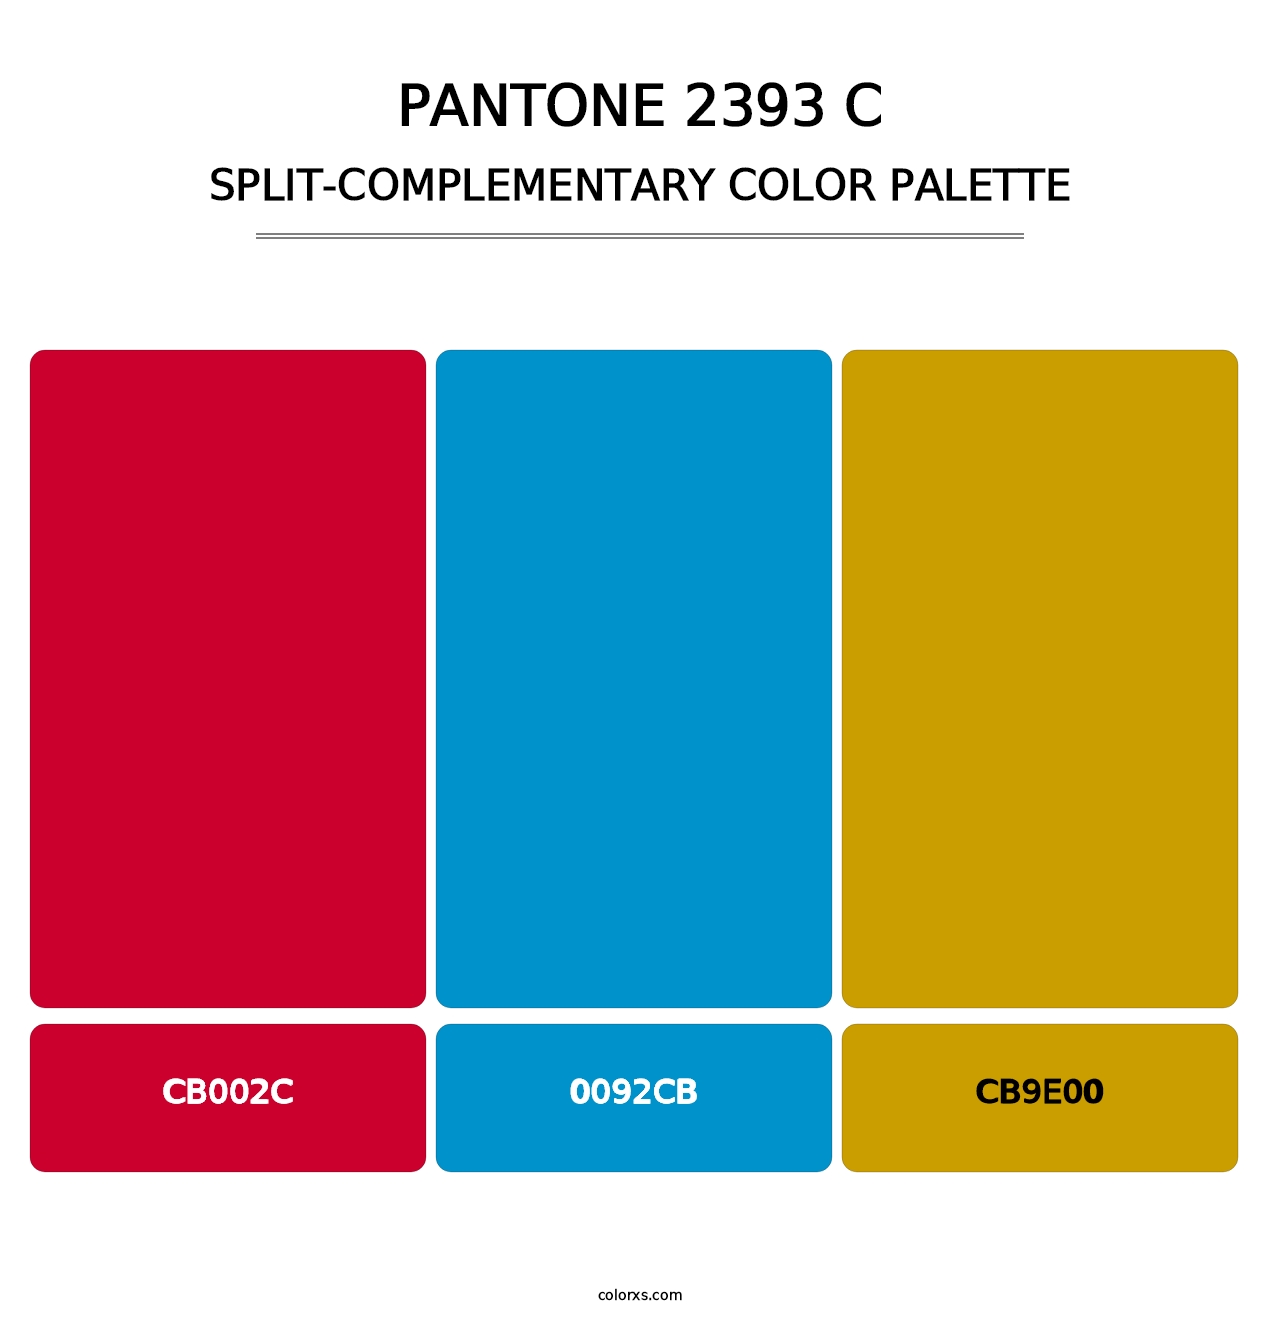 PANTONE 2393 C - Split-Complementary Color Palette